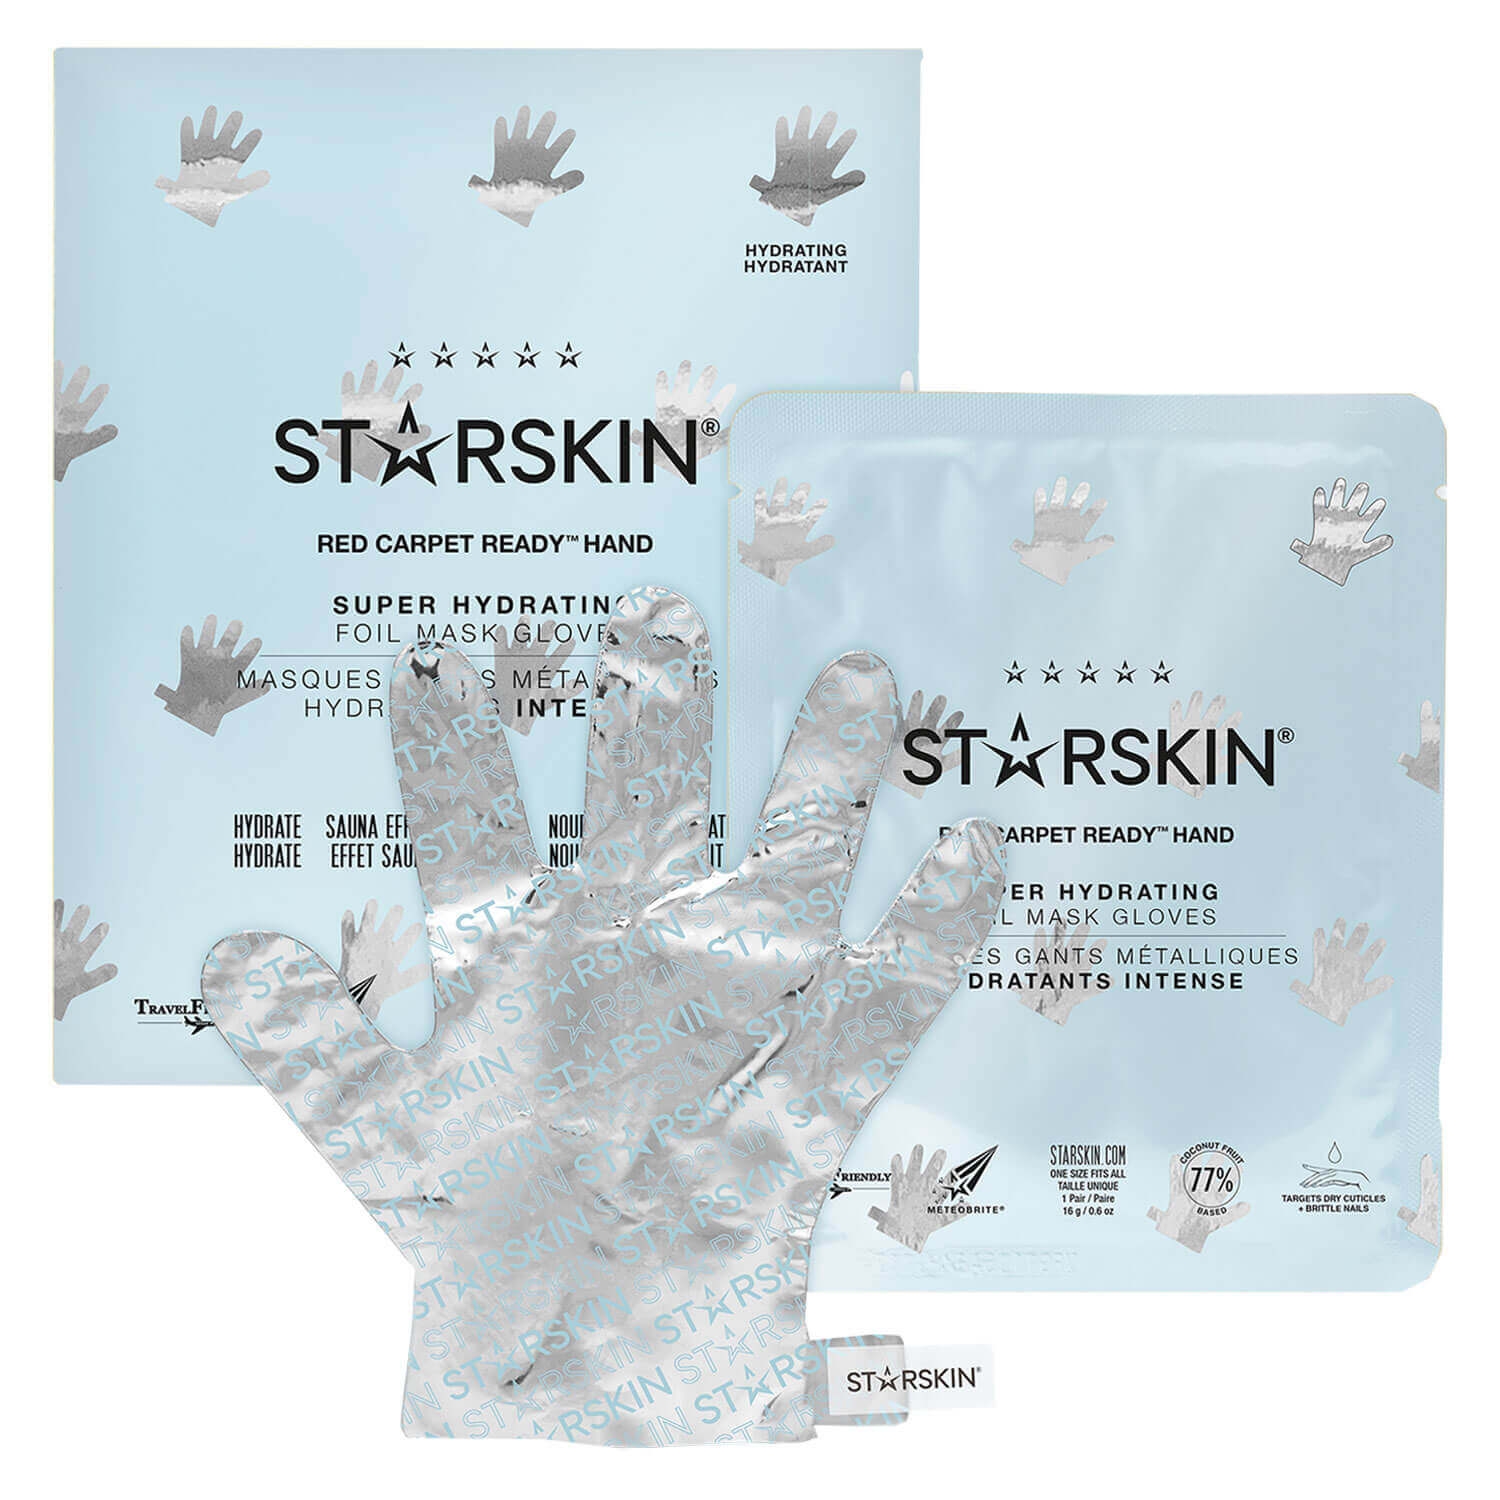 Produktbild von STARSKIN - Red Carpet Ready Hand Hydrating Hand Mask